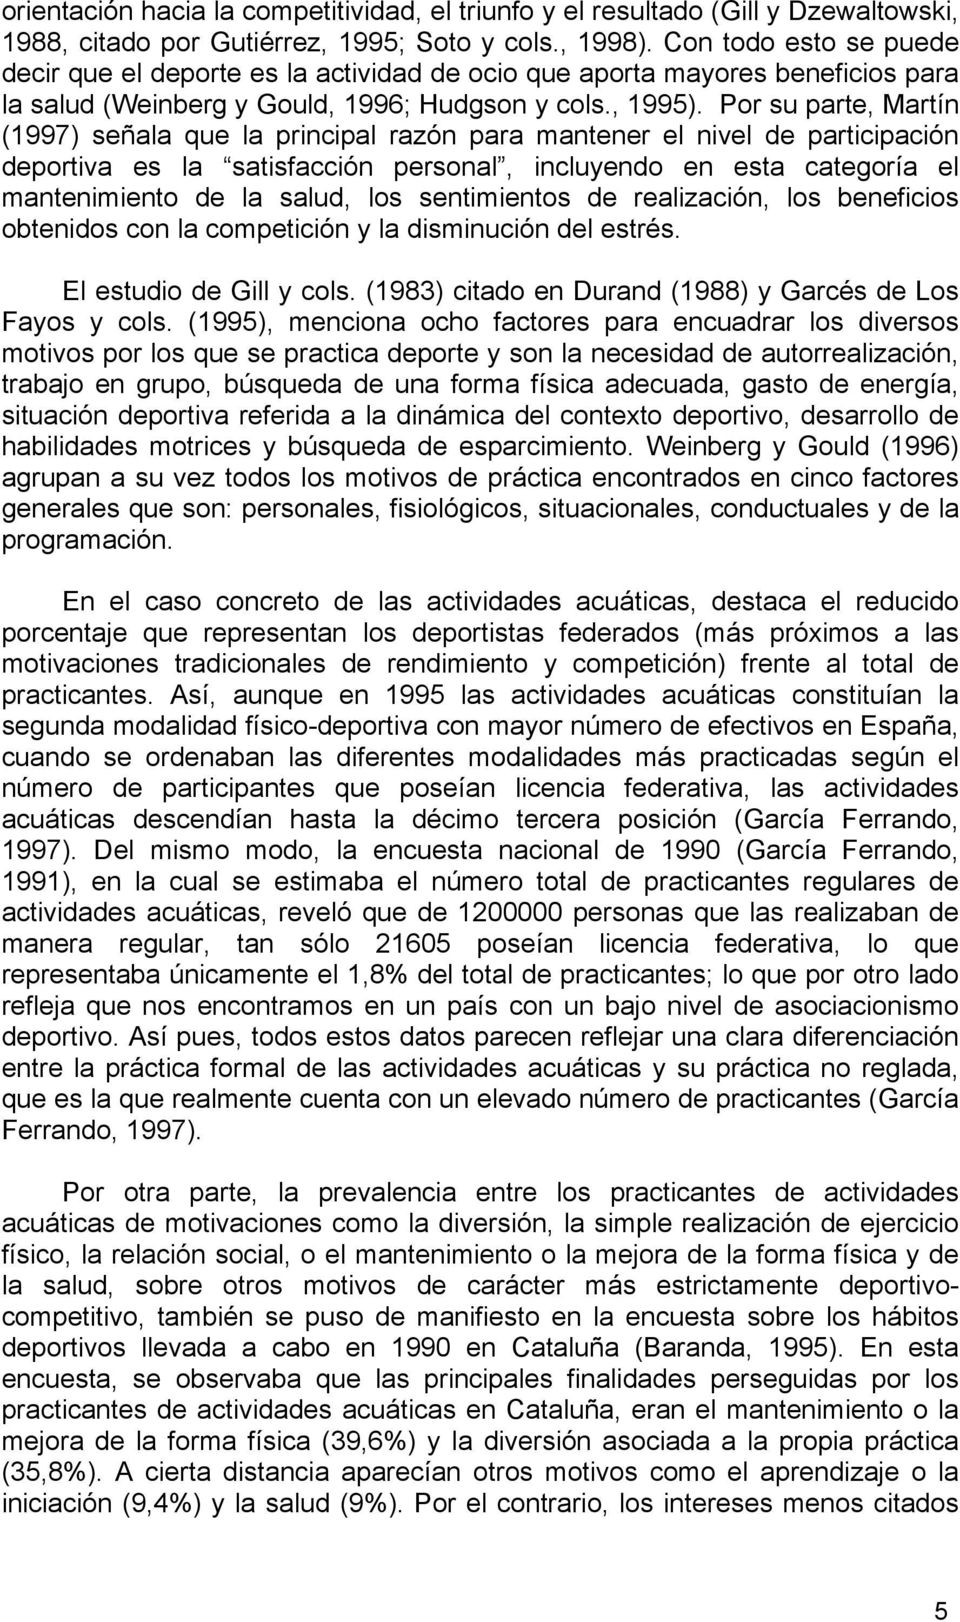 Por su parte, Martín (1997) señala que la principal razón para mantener el nivel de participación deportiva es la satisfacción personal, incluyendo en esta categoría el mantenimiento de la salud, los